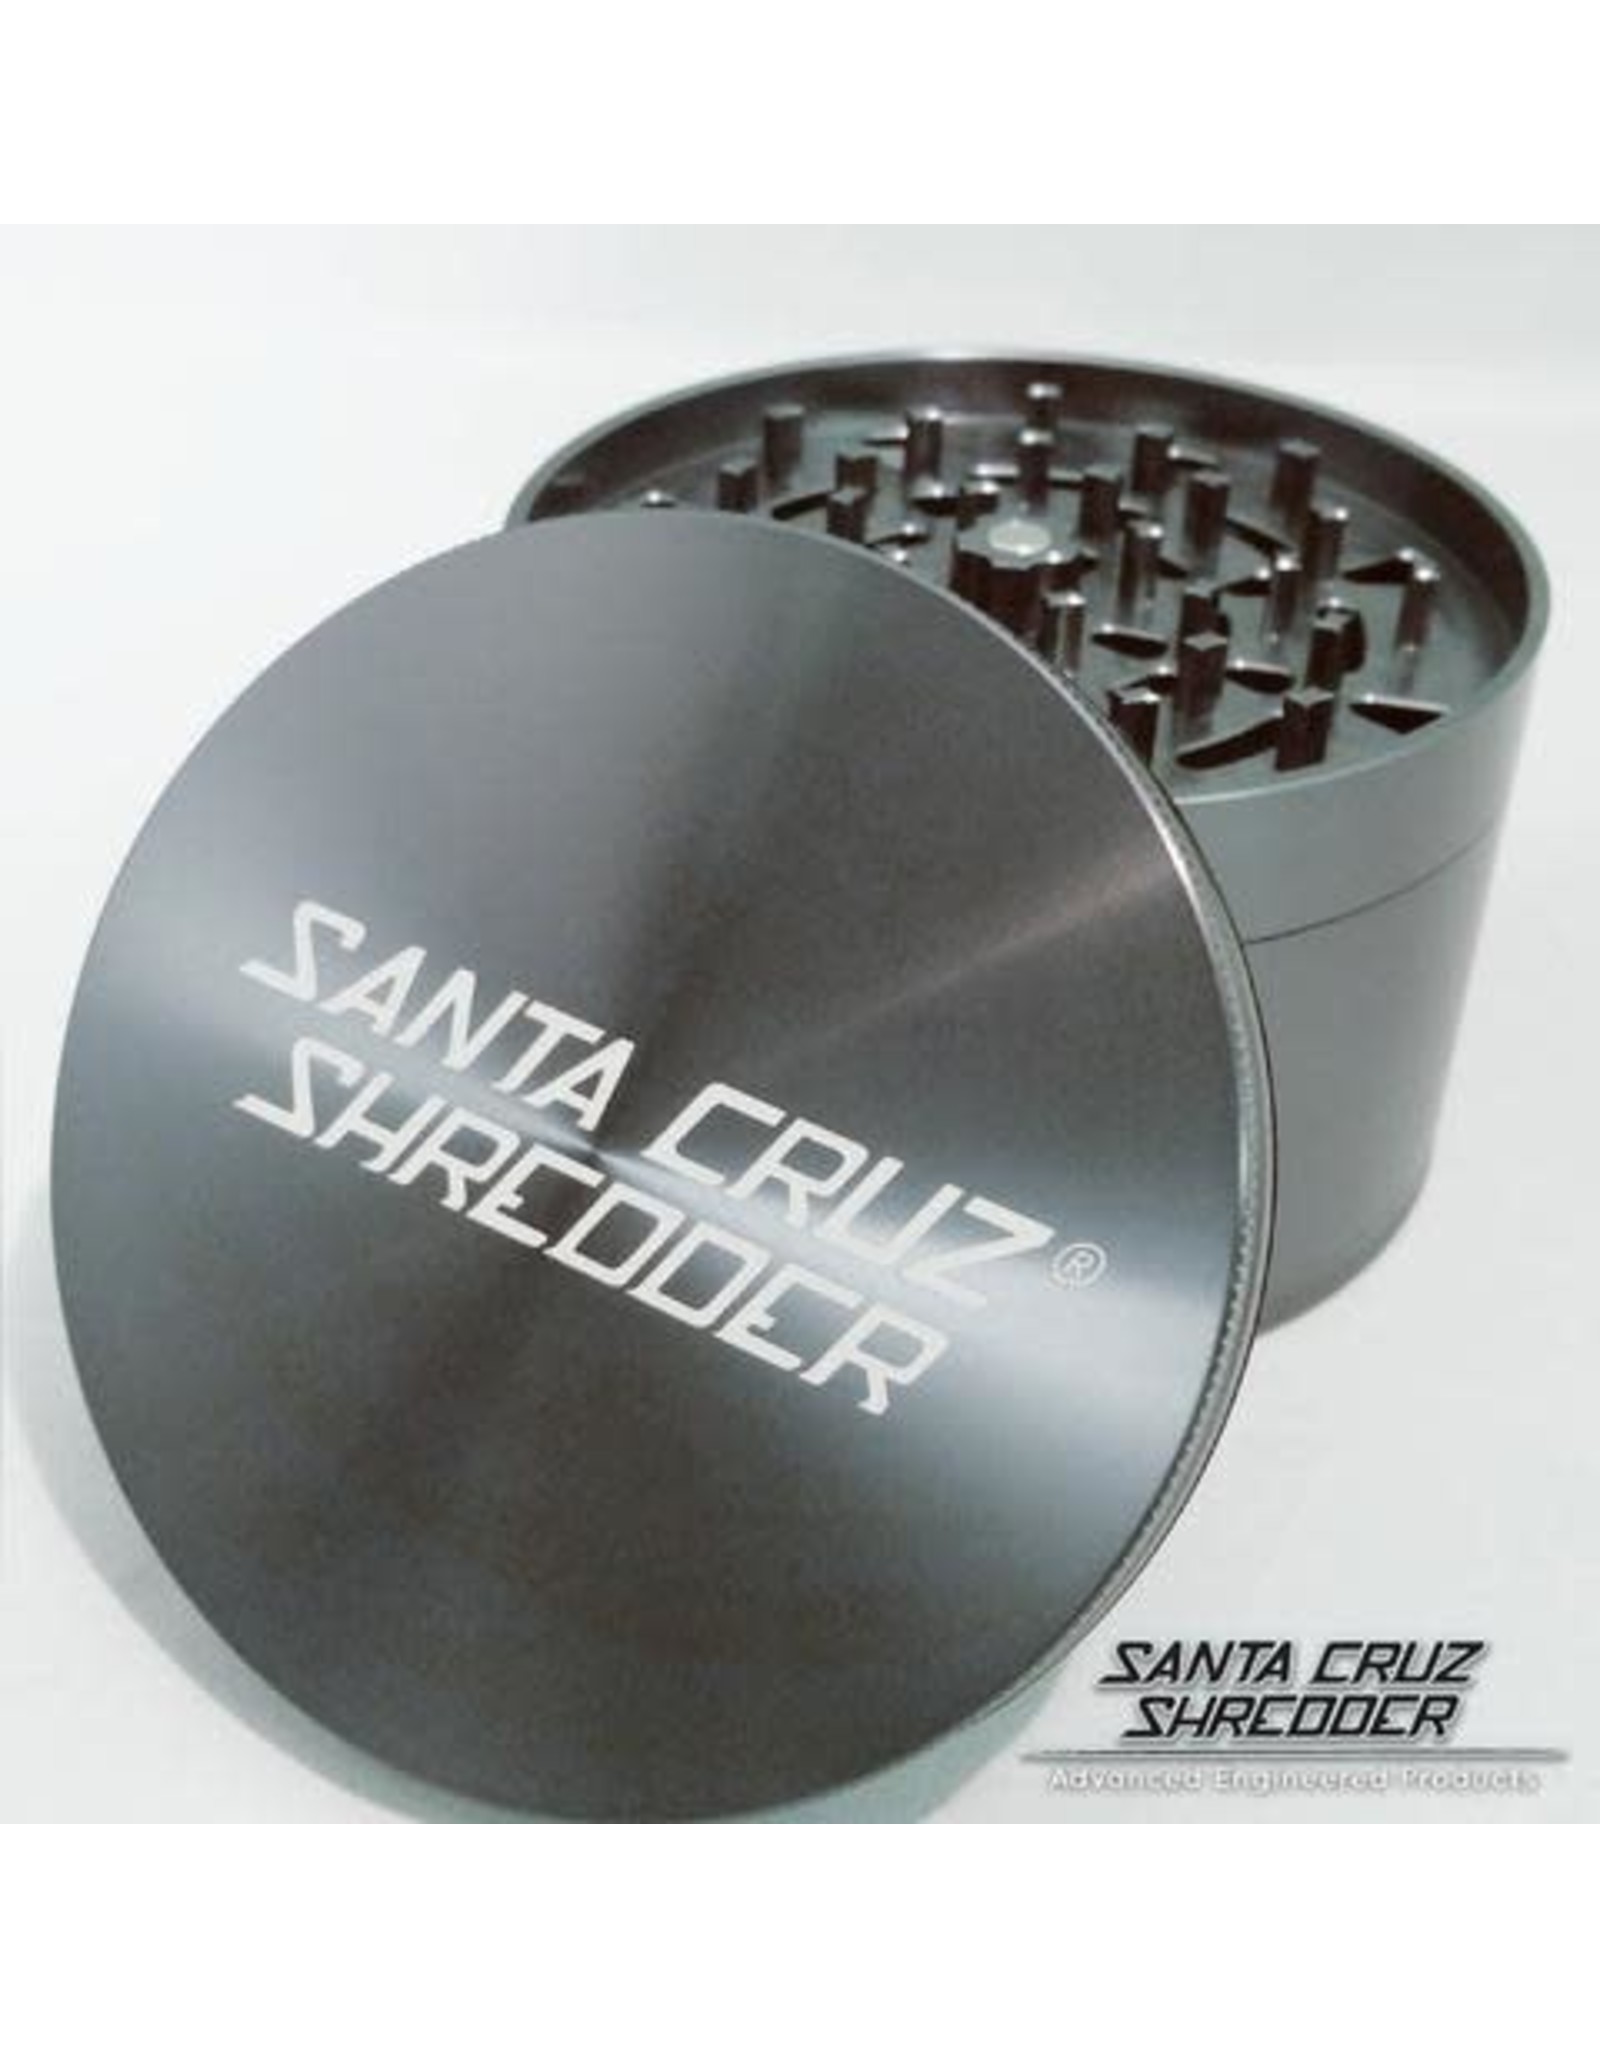 Santa Cruz Shredder Santa Cruz Shredder Jumbo 4Pc Grey